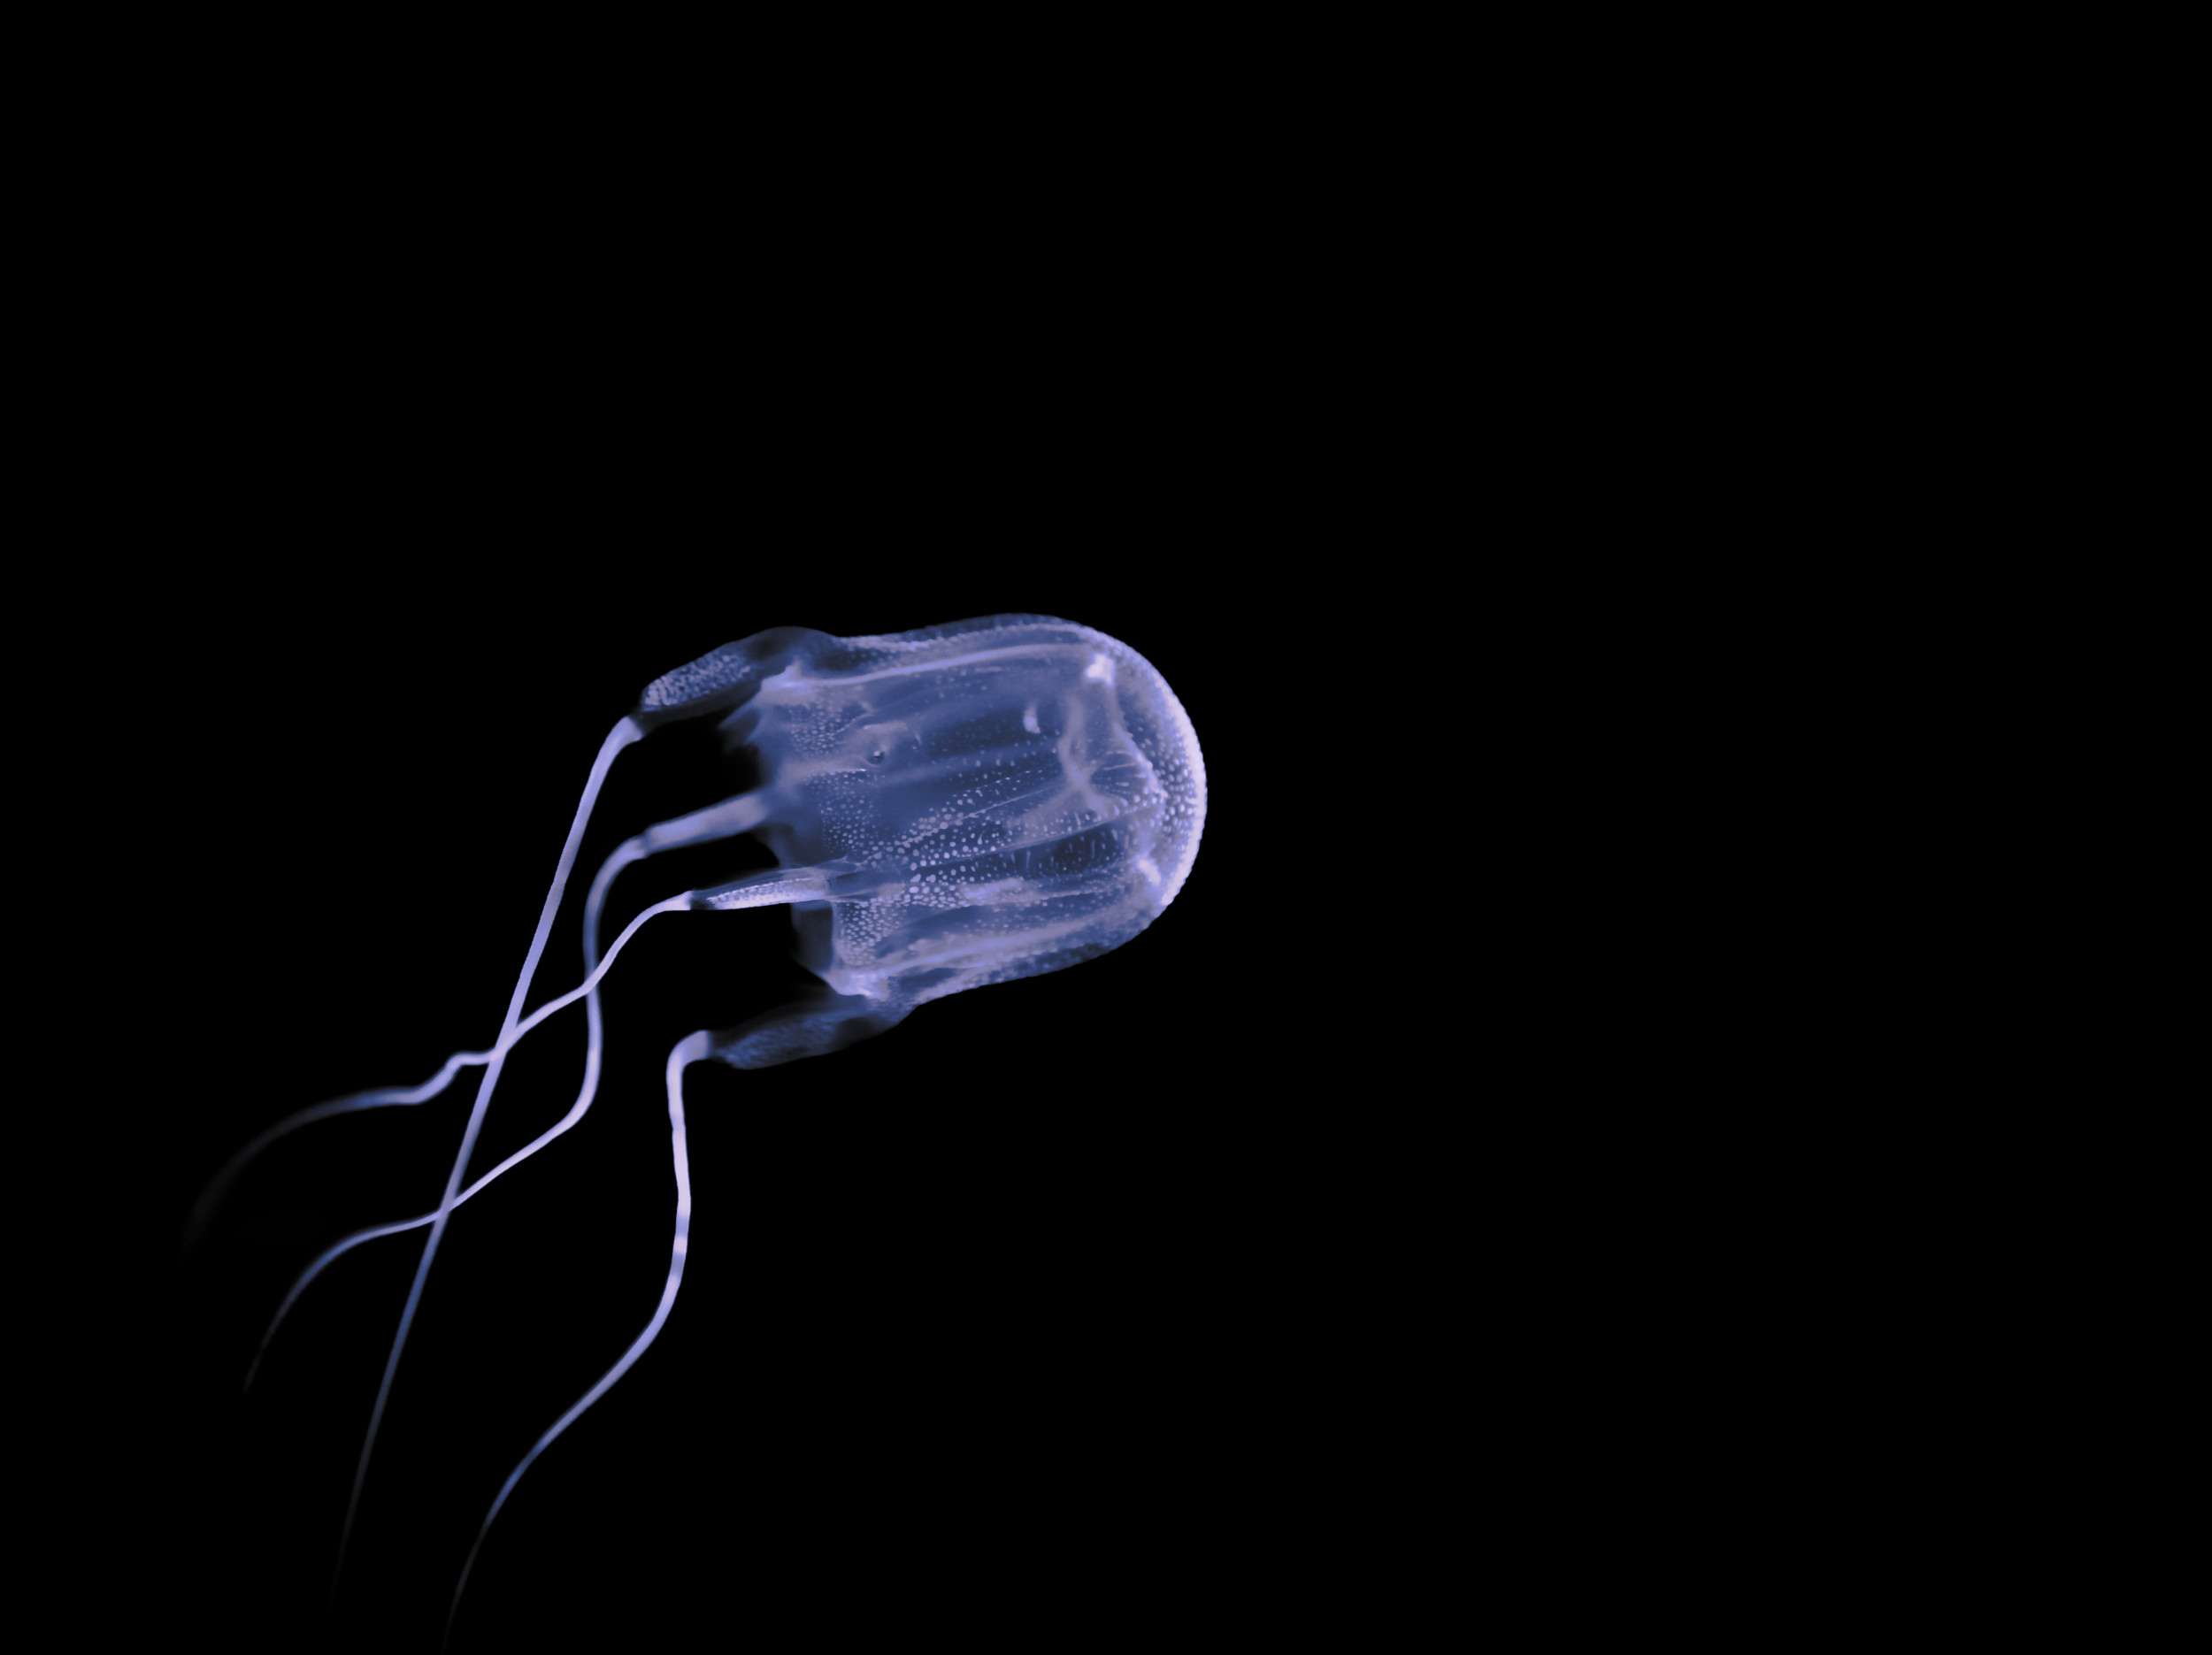 box jellyfish attack